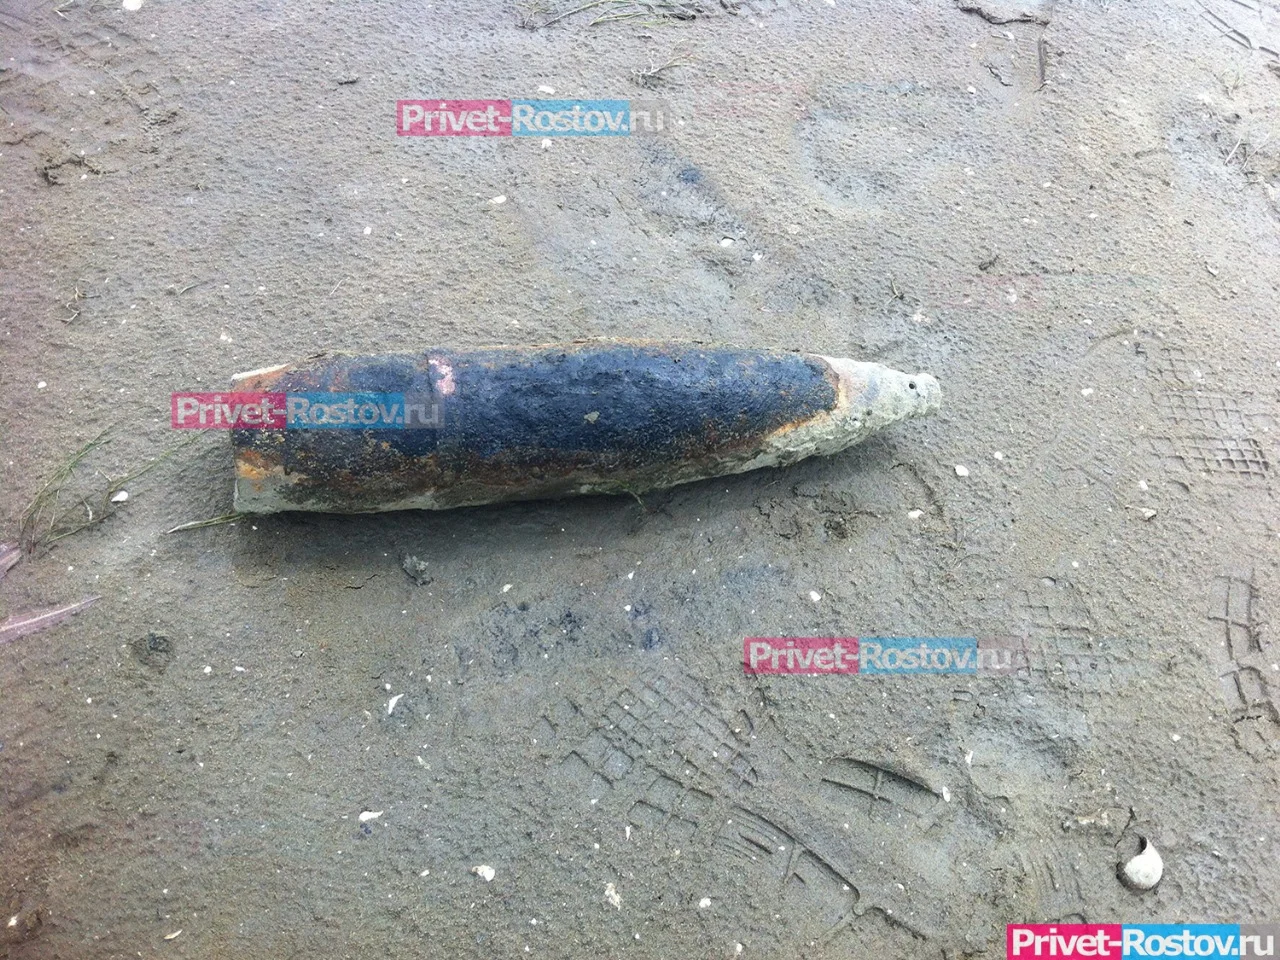 Подозрительный боеприпас обнаружен в реке Ростовской области